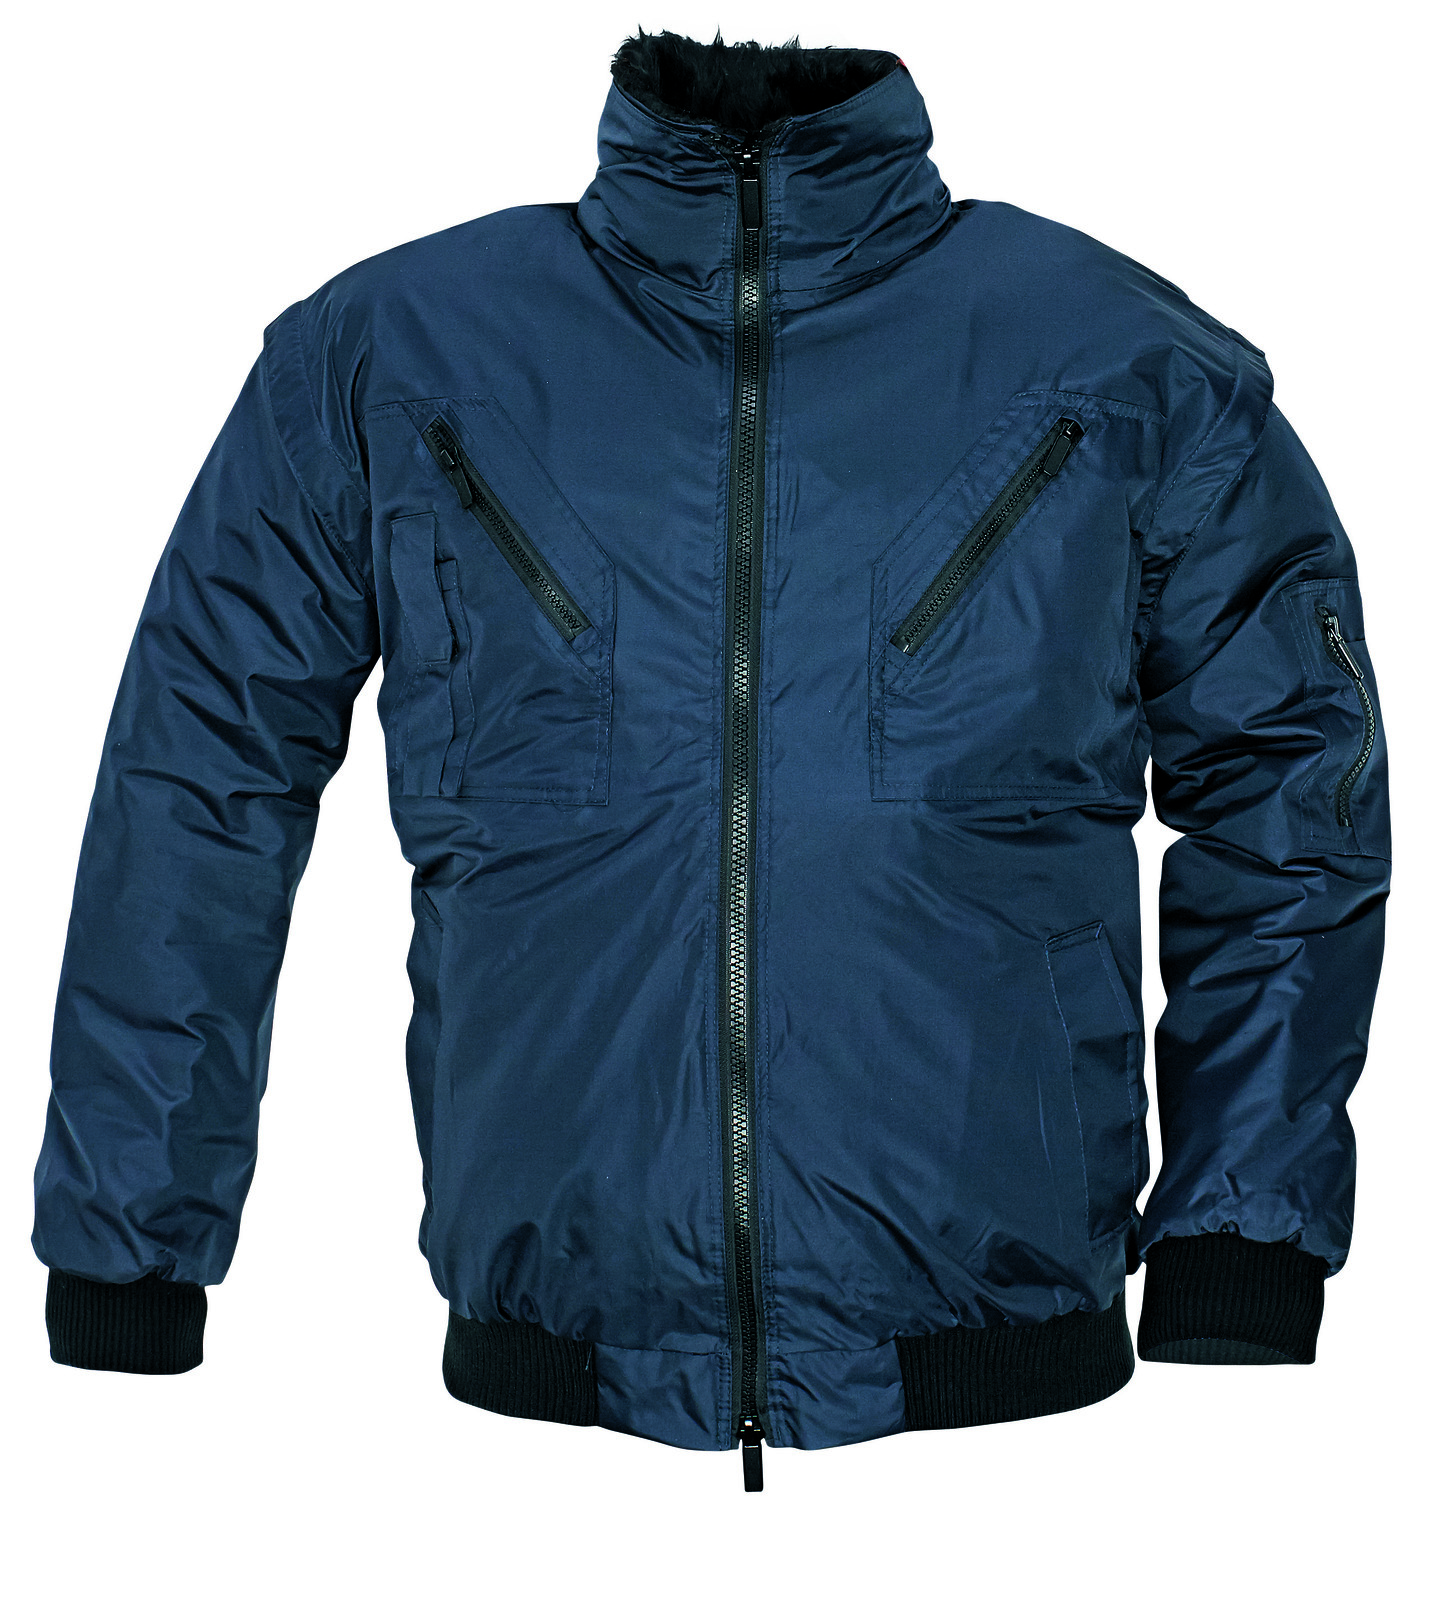 Zimná bunda a vesta Pilot 3v1 pánska - veľkosť: L, farba: navy